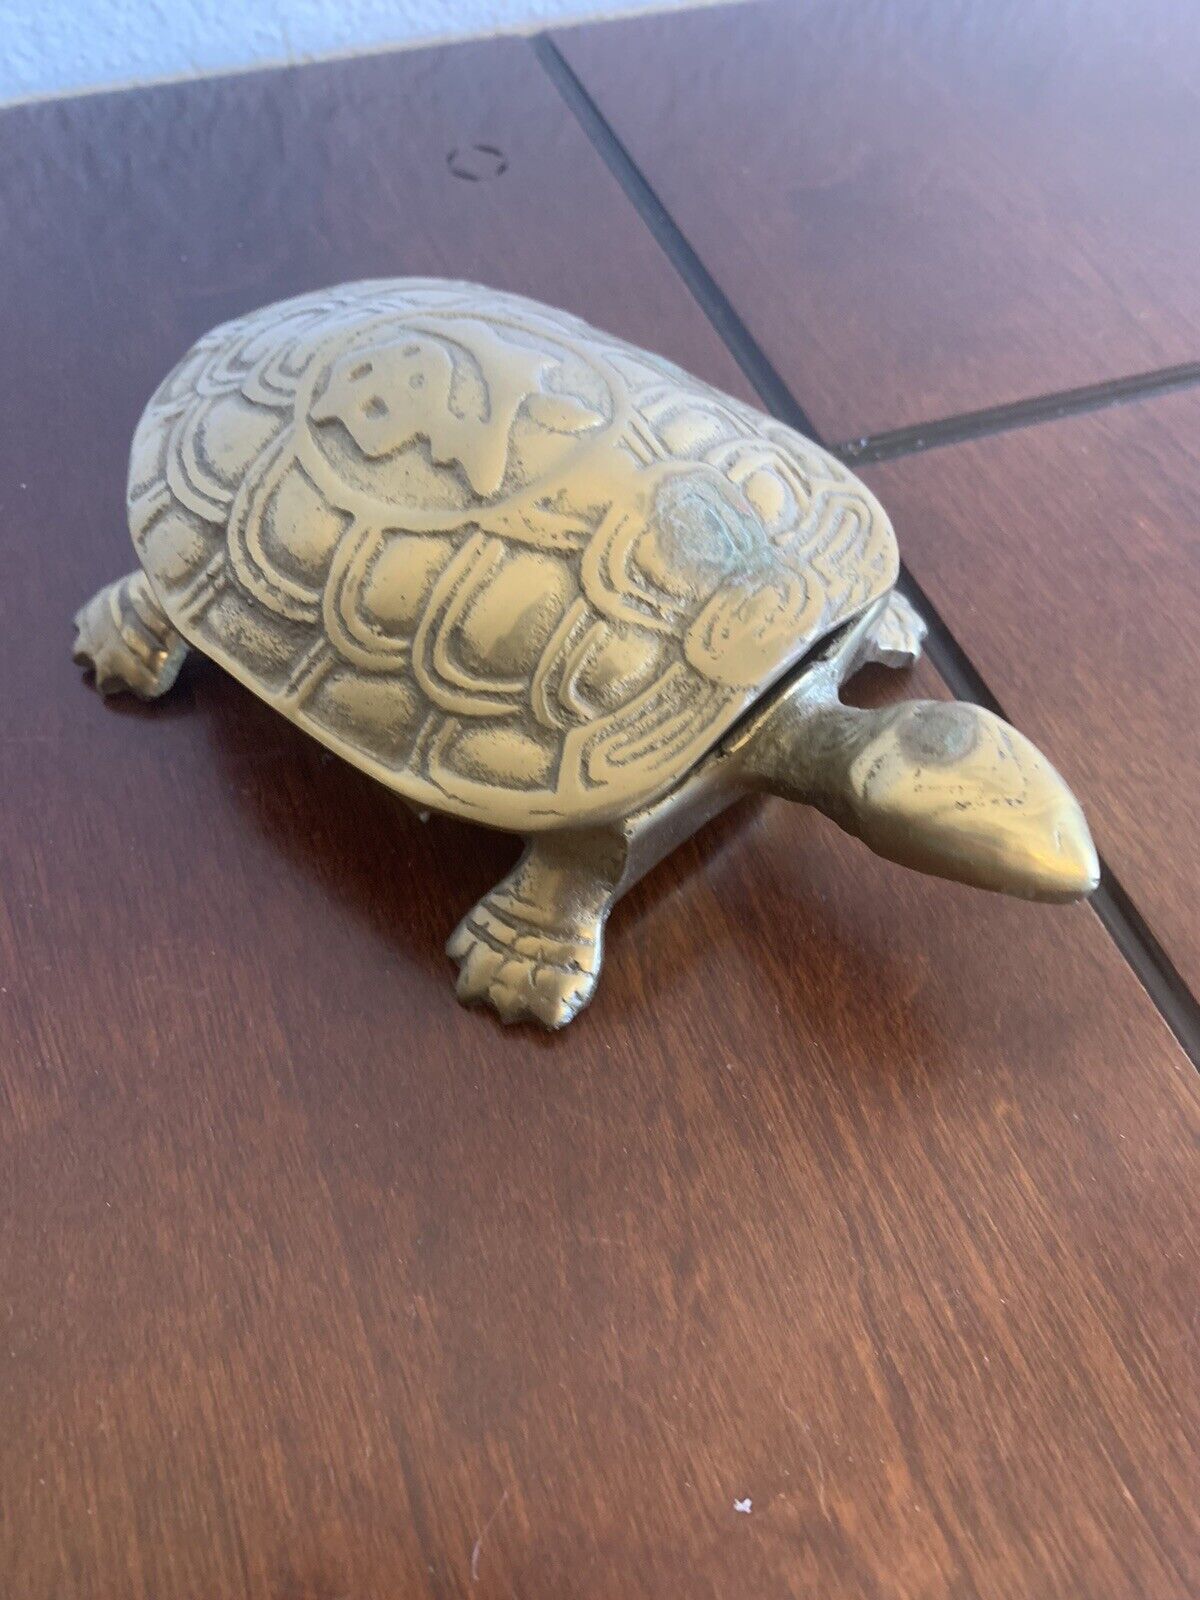 Vintage Solid Brass Turtle Figure Box Trinket Hinged Lid 6”x 3.5”